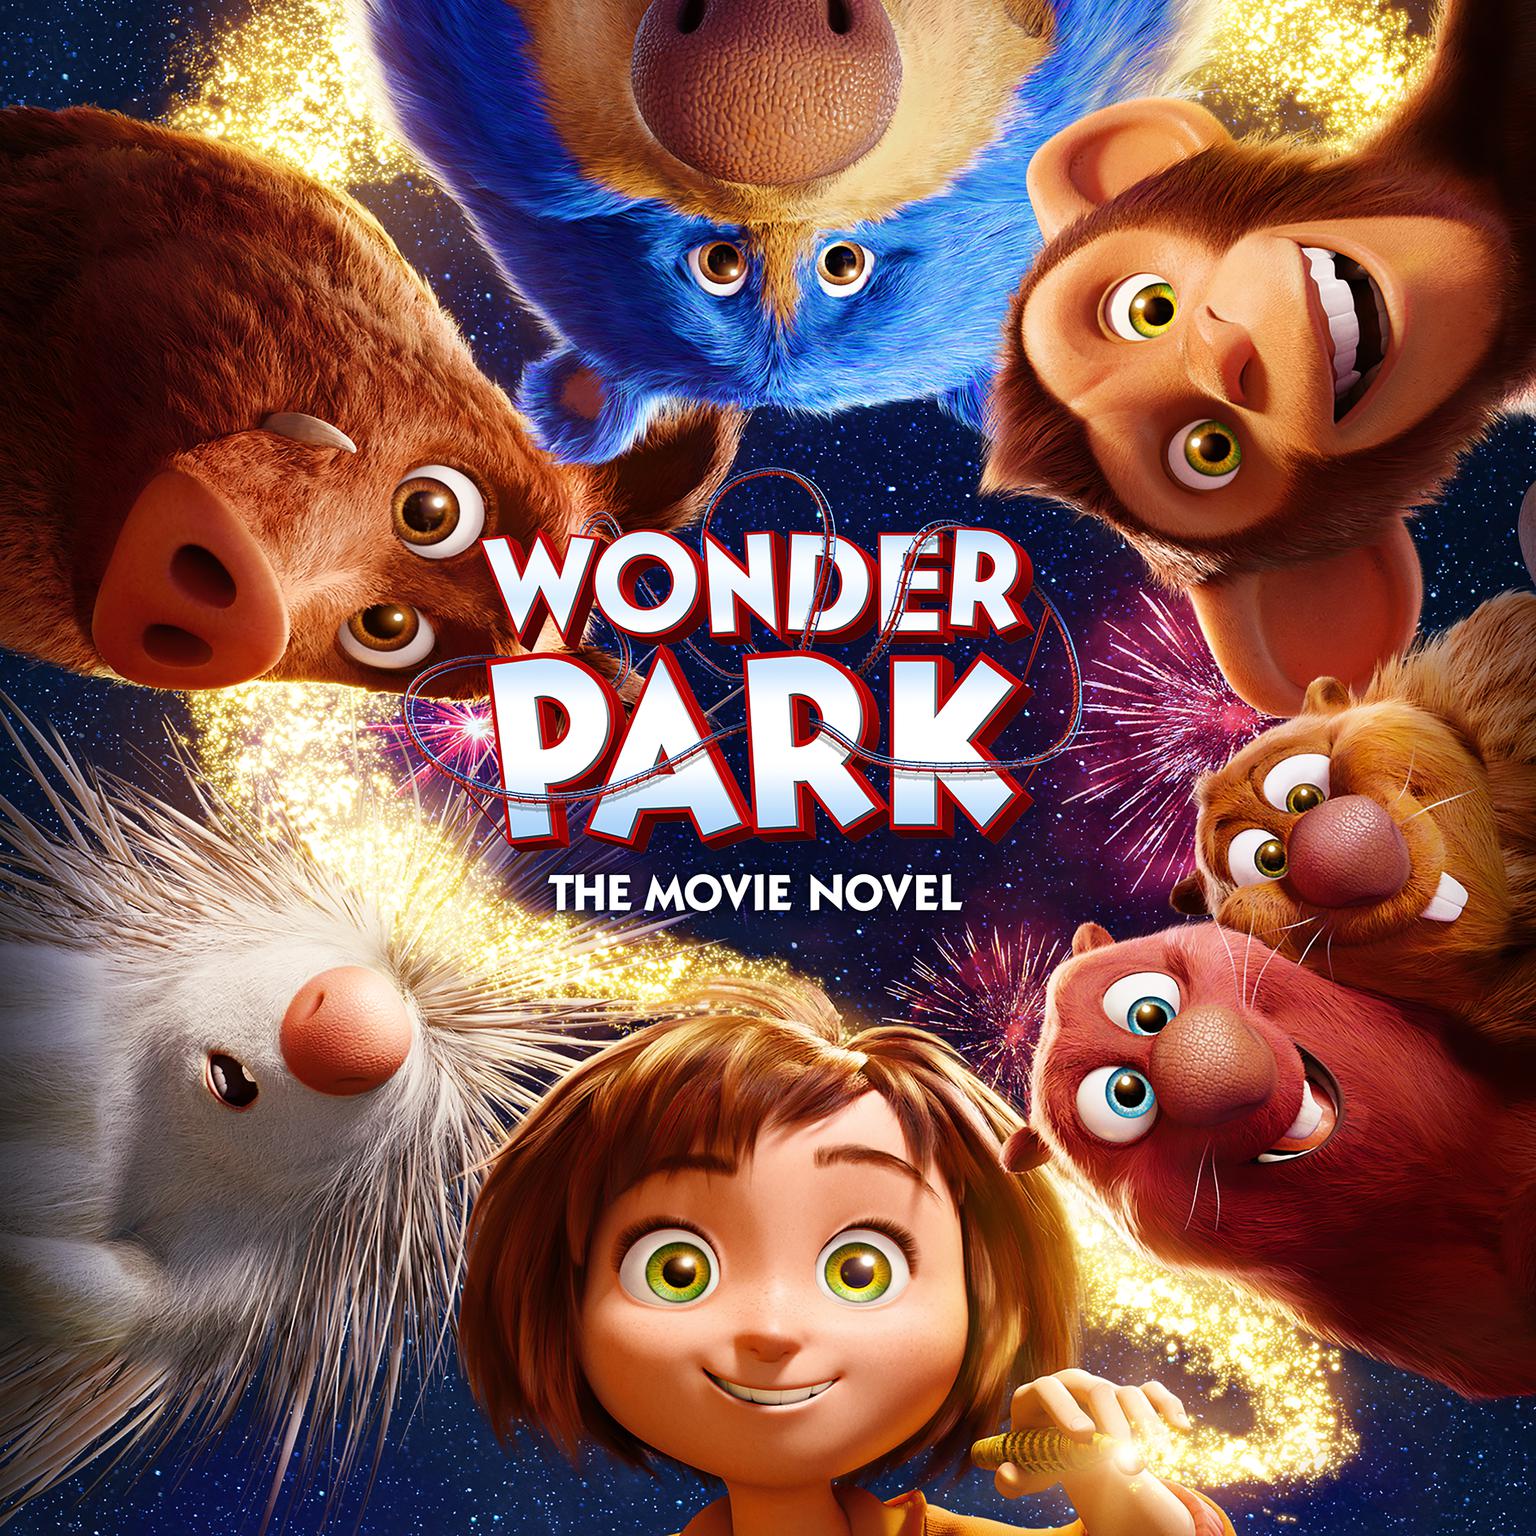 Wonder Park: The Movie Novel: The Movie Novel Audiobook, by Sadie Chesterfield